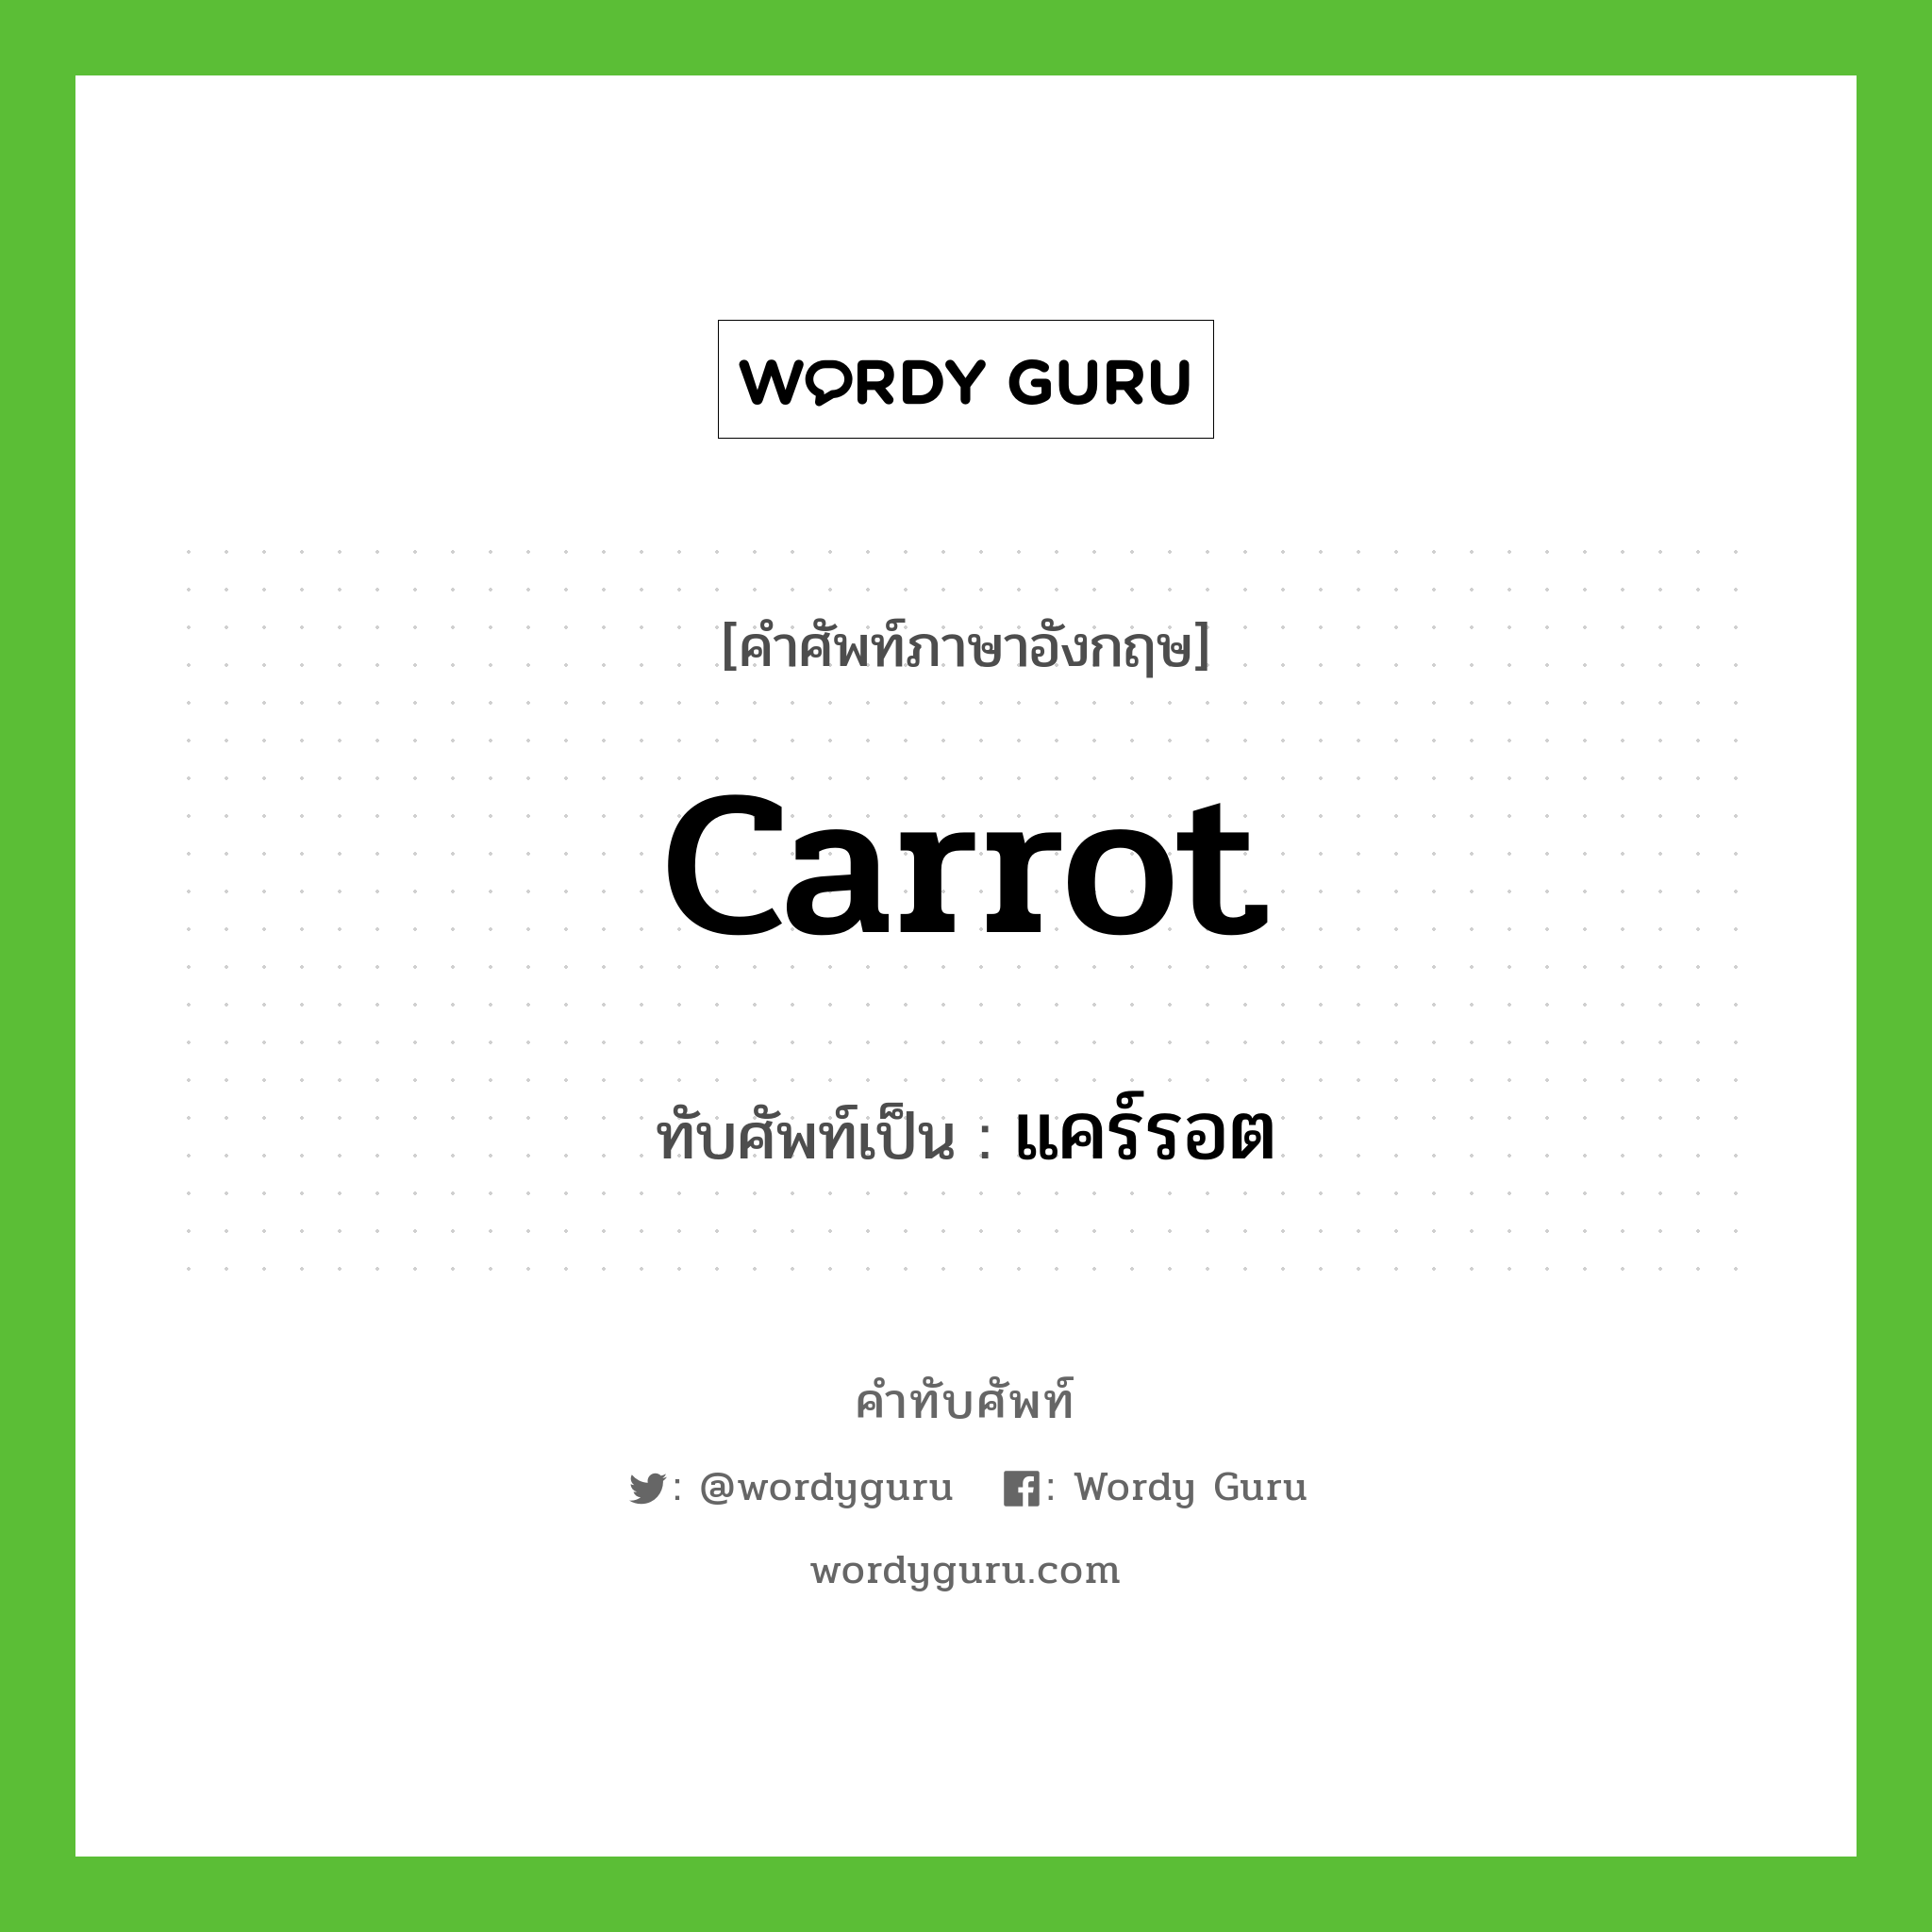 carrot เขียนเป็นคำไทยว่าอะไร?, คำศัพท์ภาษาอังกฤษ carrot ทับศัพท์เป็น แคร์รอต